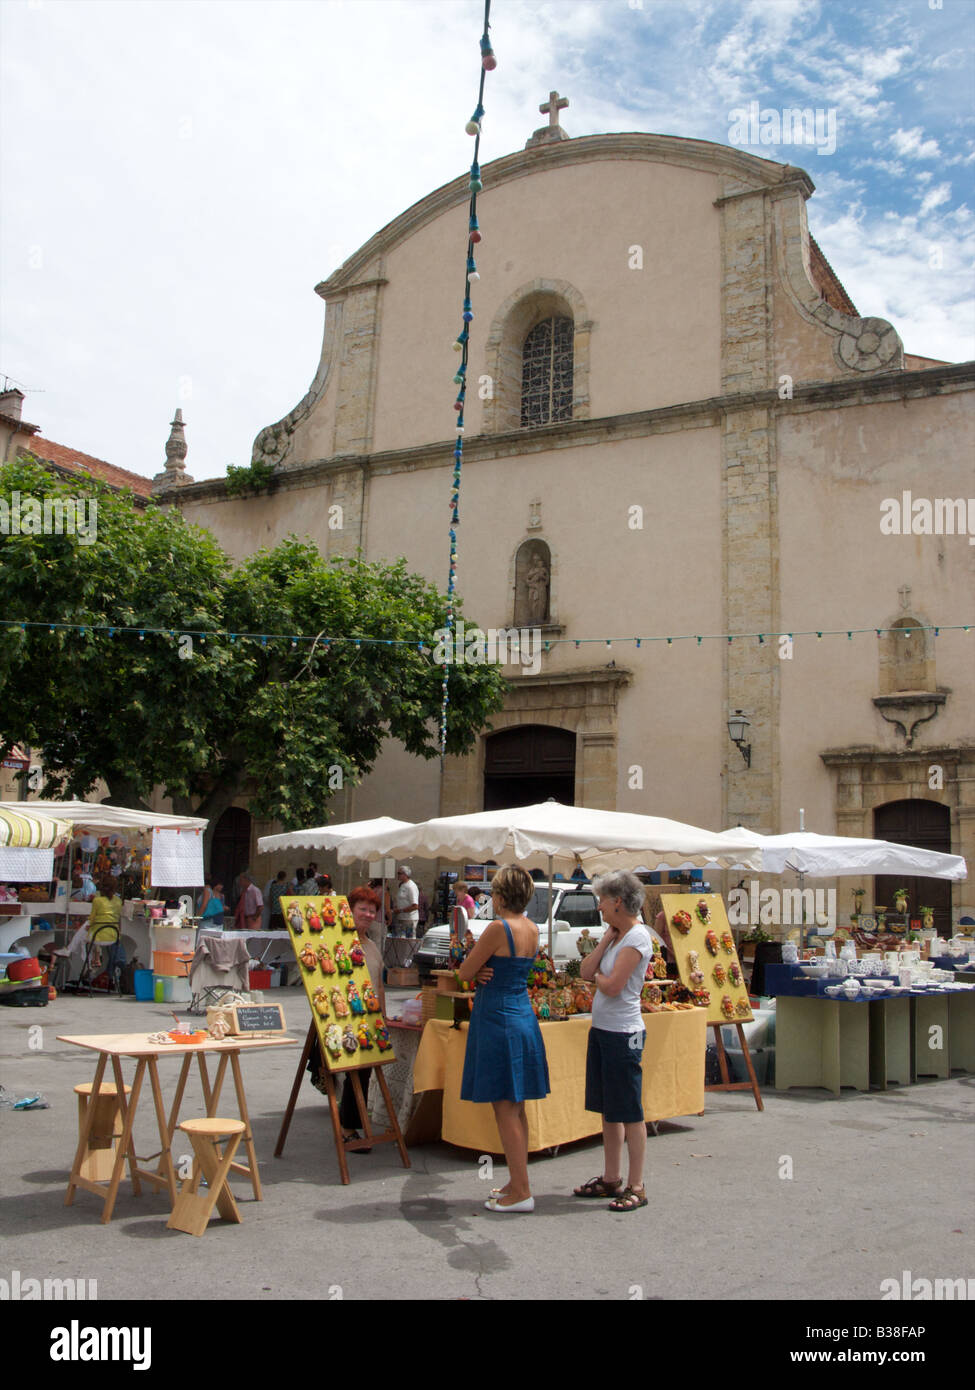 Shoppers on place du marché en face de l'église dans le village de Fayence, Var, France Banque D'Images